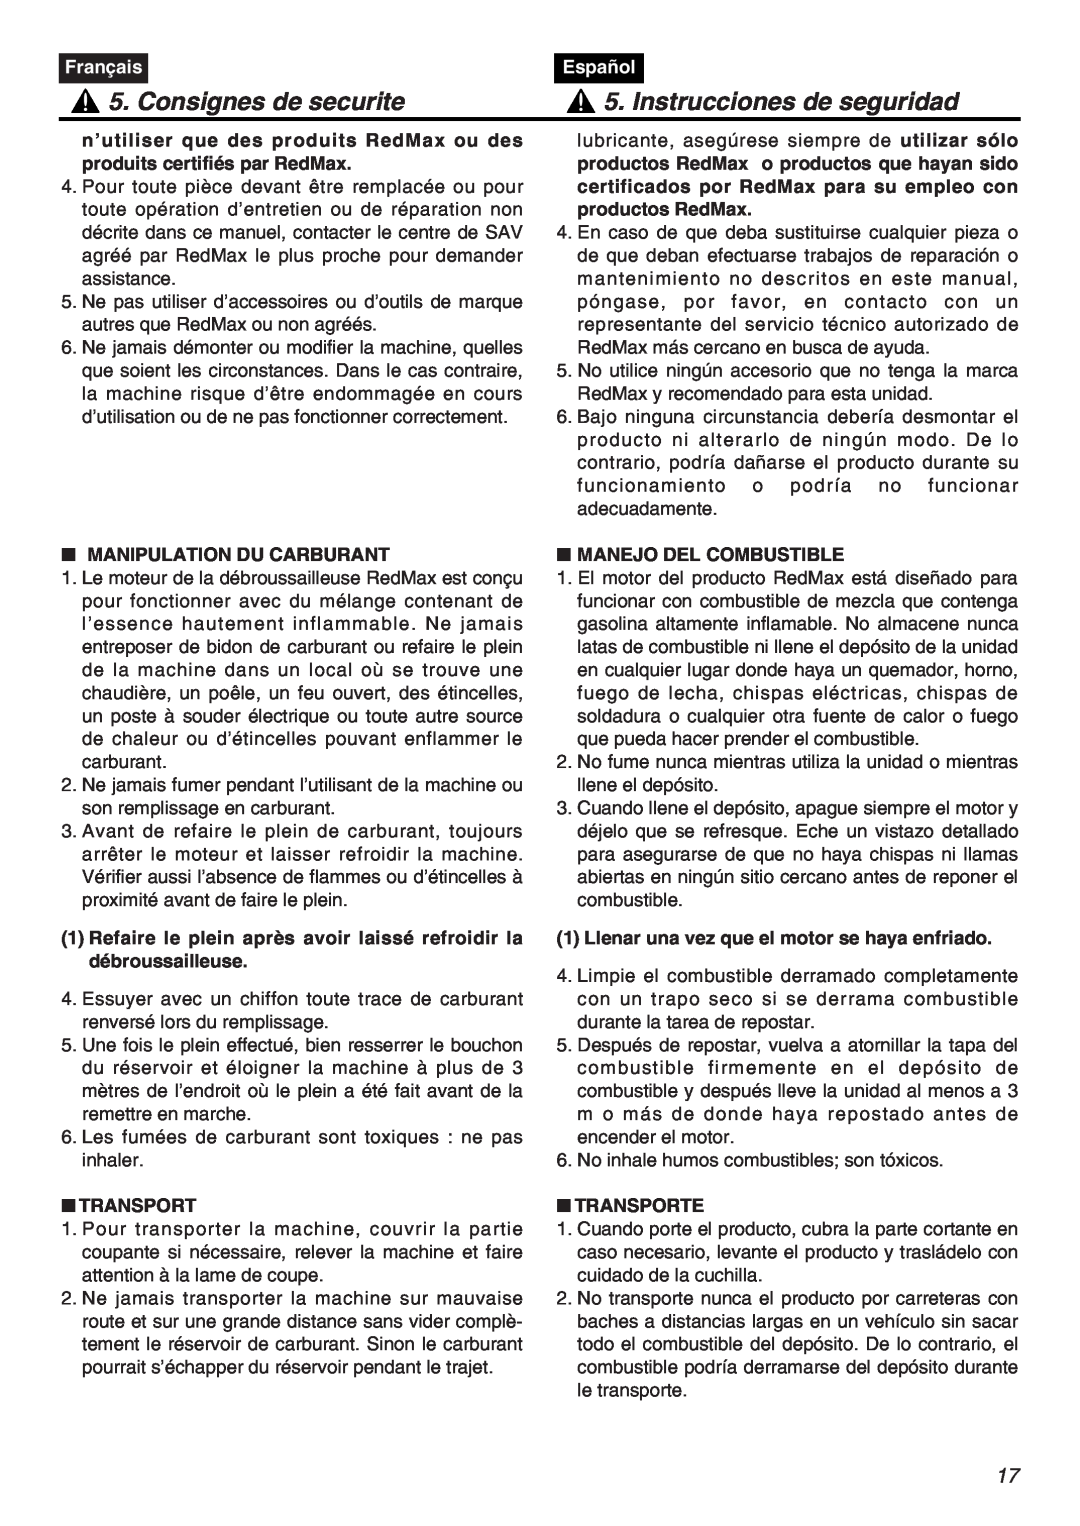 RedMax HTZ2401-CA manual Consignes de securite, Instrucciones de seguridad, Français, Español, Manipulation Du Carburant 